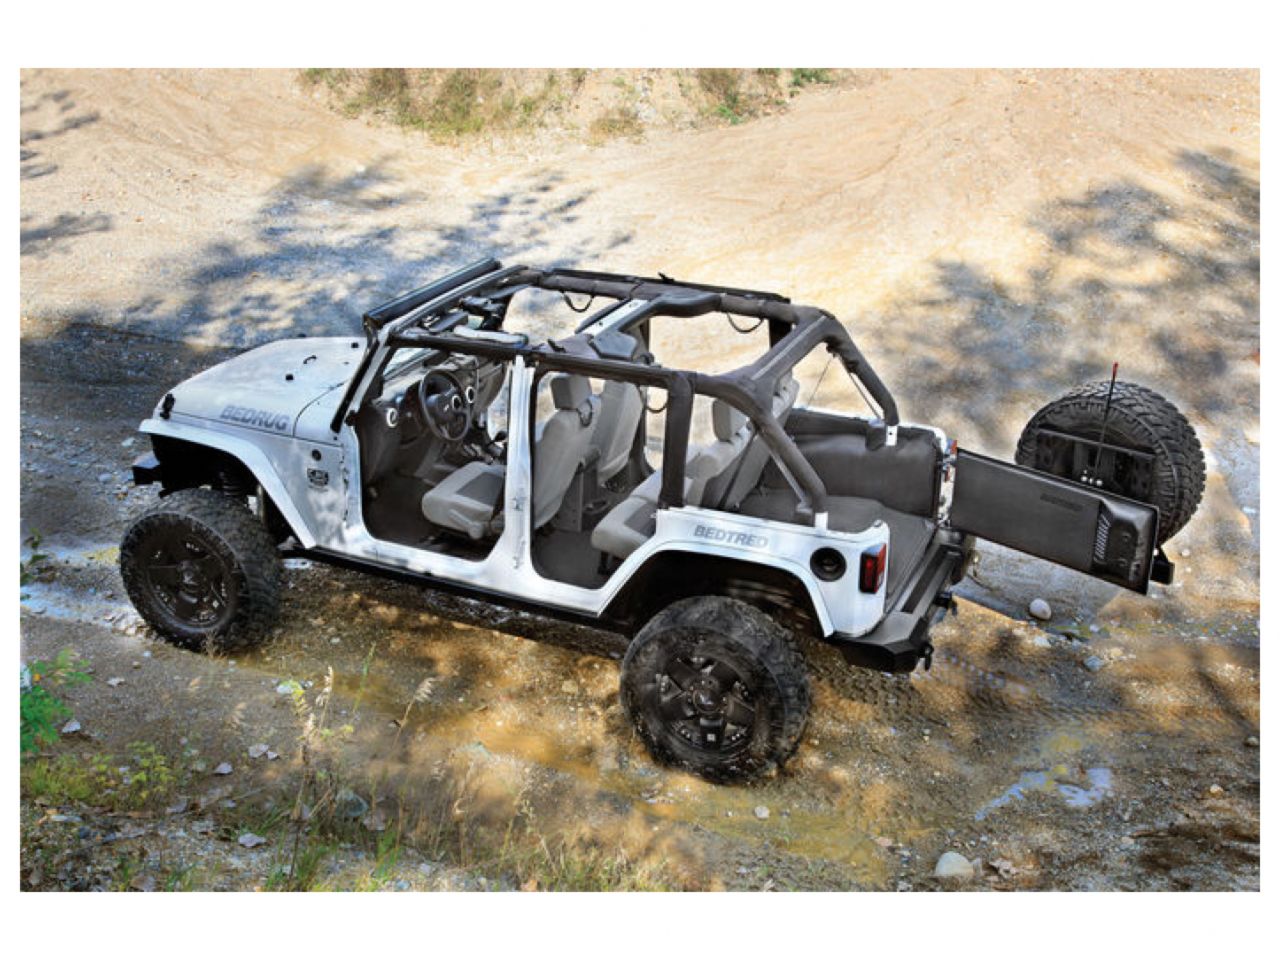 Bedrug Jeep Bedtred 11+ JK Unlimited 4DR Rear 5Pc Cargo Kit